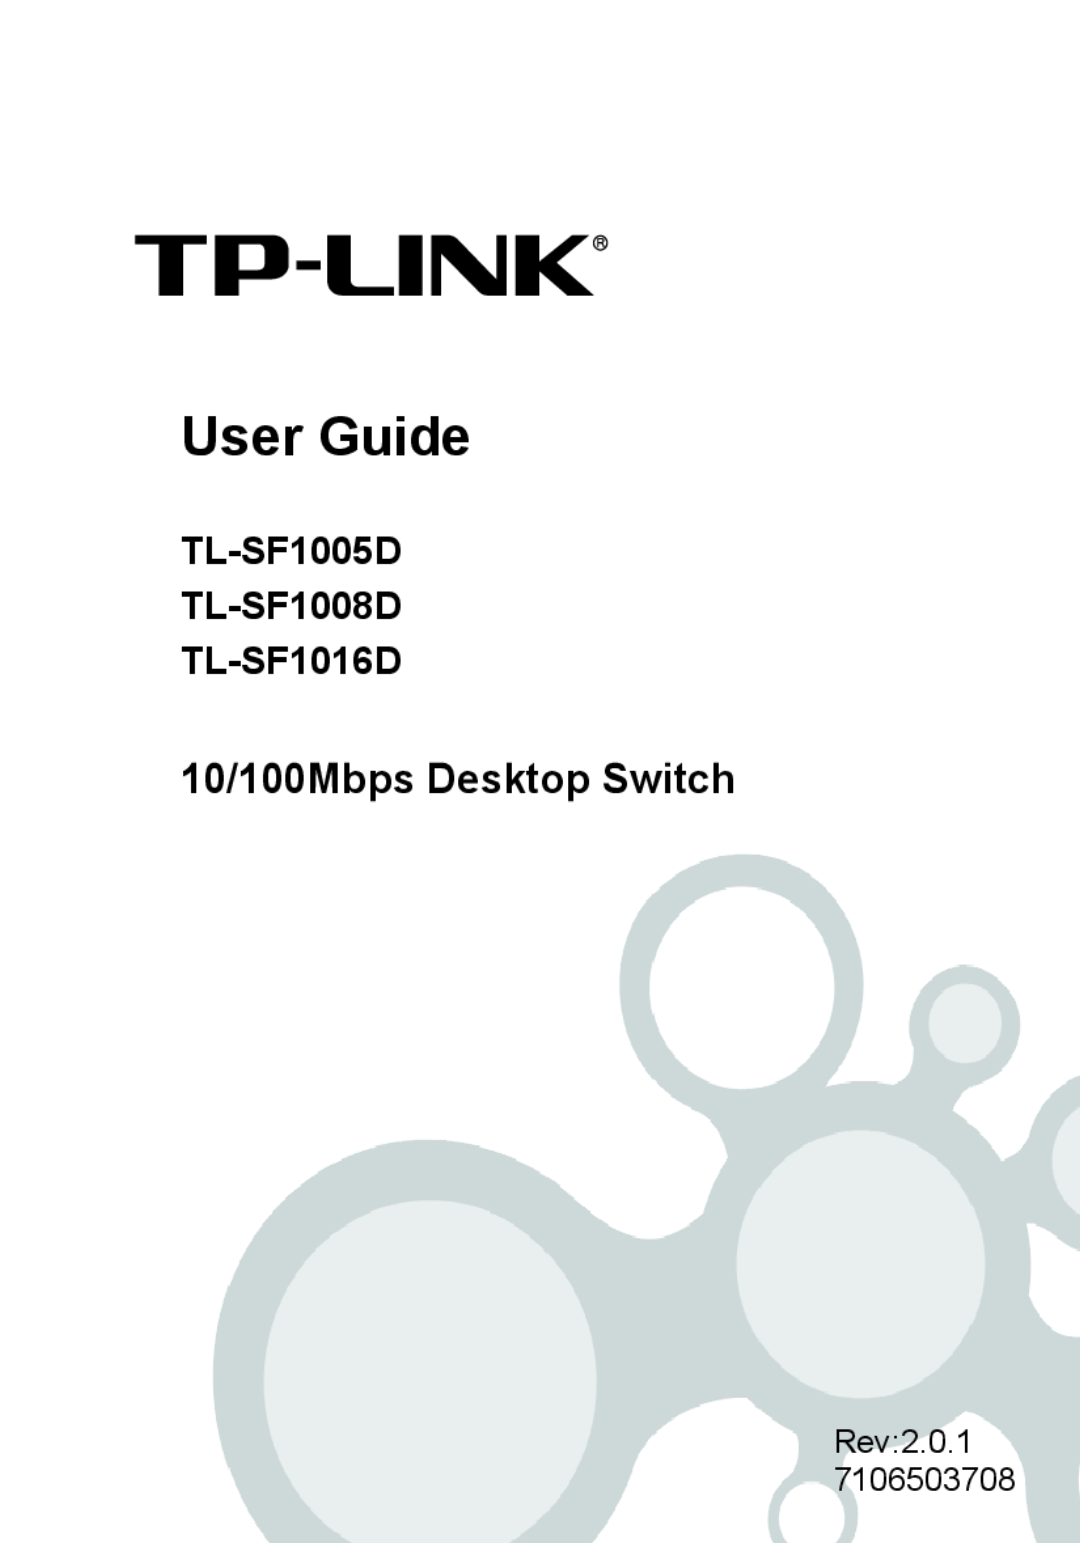 TP-Link TL-SF1005D specifications Features, Description, Port 10/100Mbps Desktop Switch 